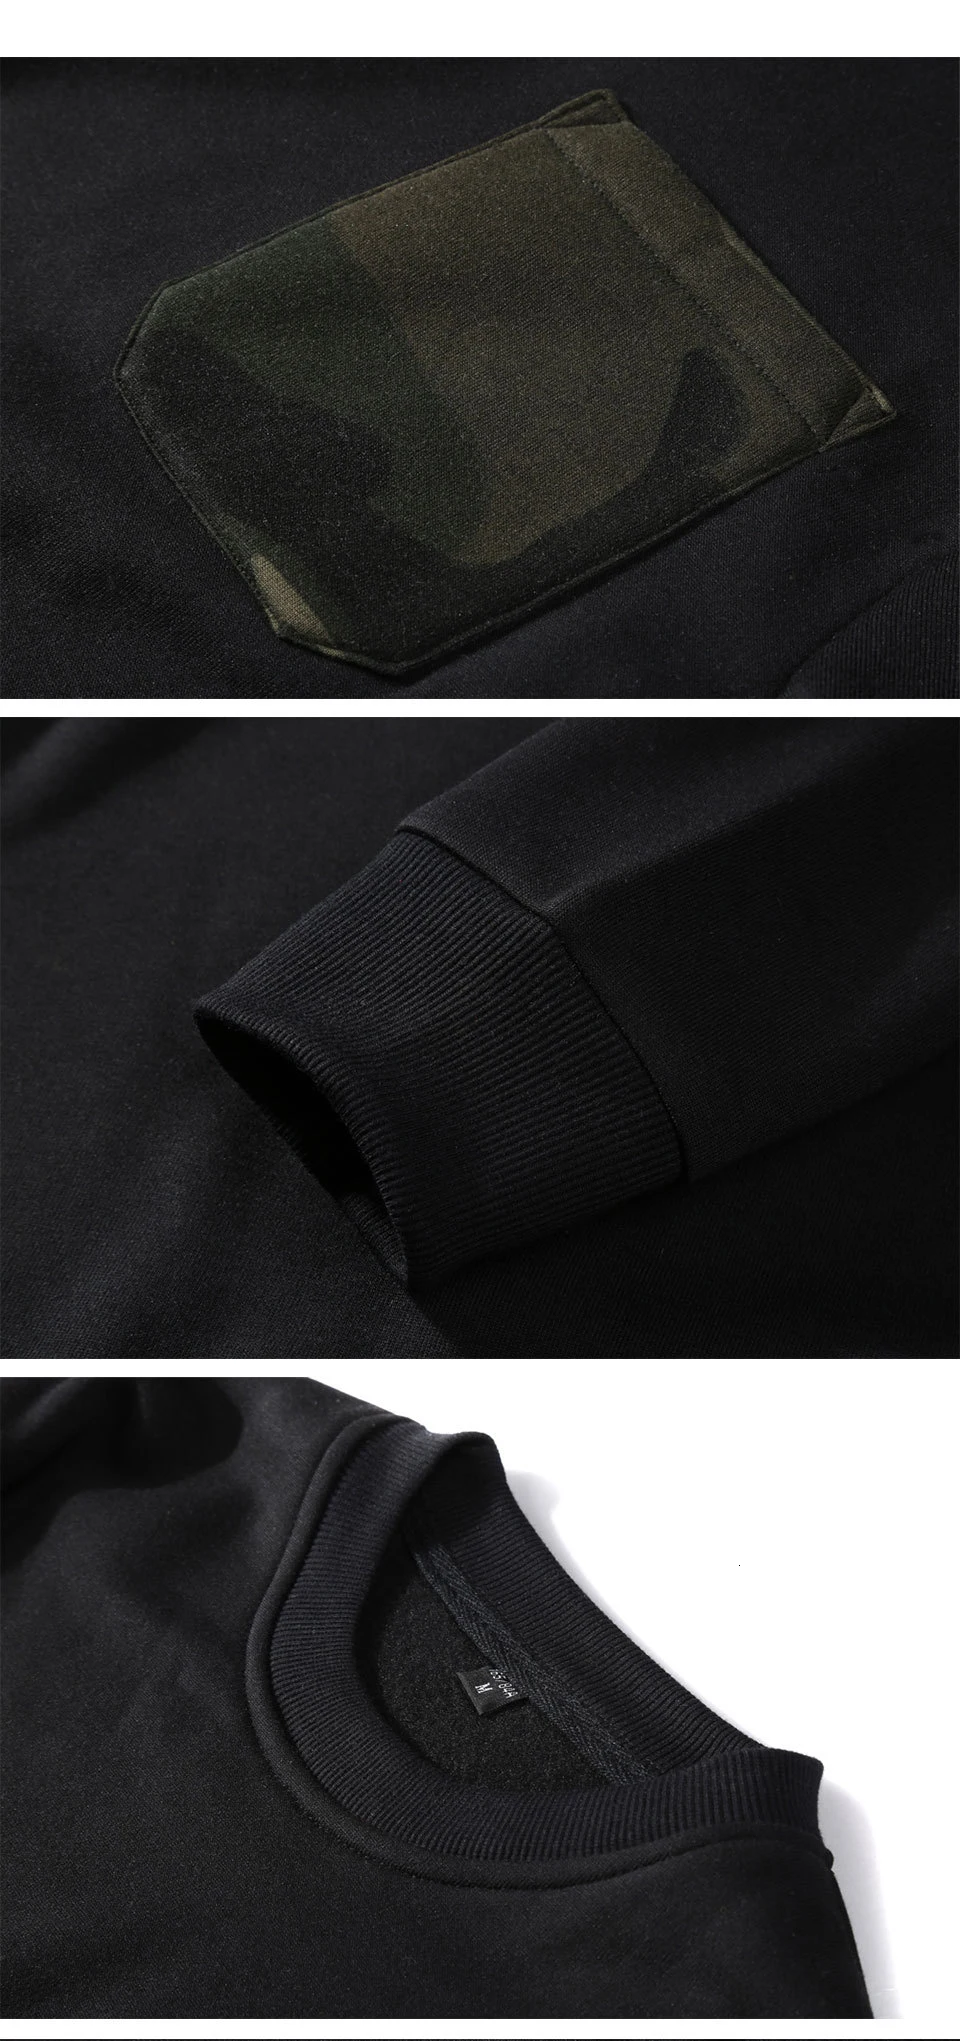 Moomphya/Splicing camo нагрудный карман Кофты для мужчин Хип Хоп Уличная одежда в стиле «хип-хоп», зимняя флисовая Толстовка для мужчин пуловер толстовки для мужчин европейский размер